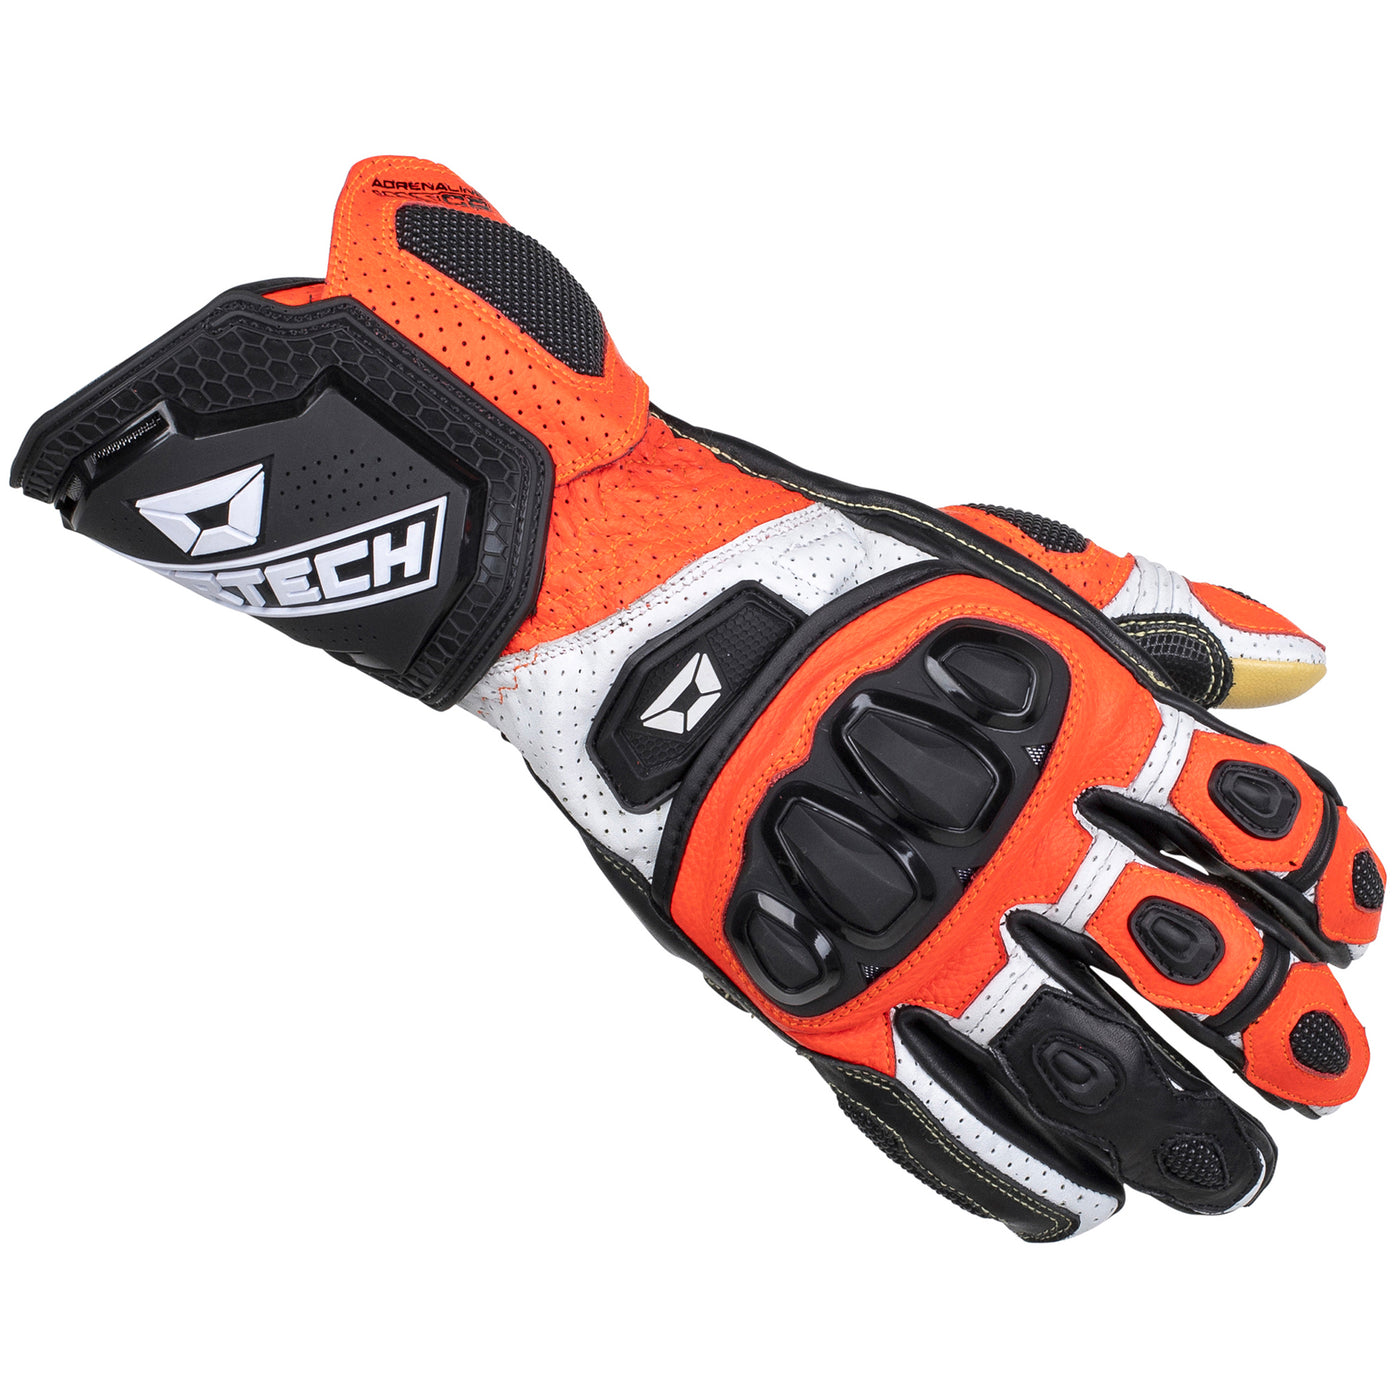 Cortech Speedway Adrenaline GP Glove